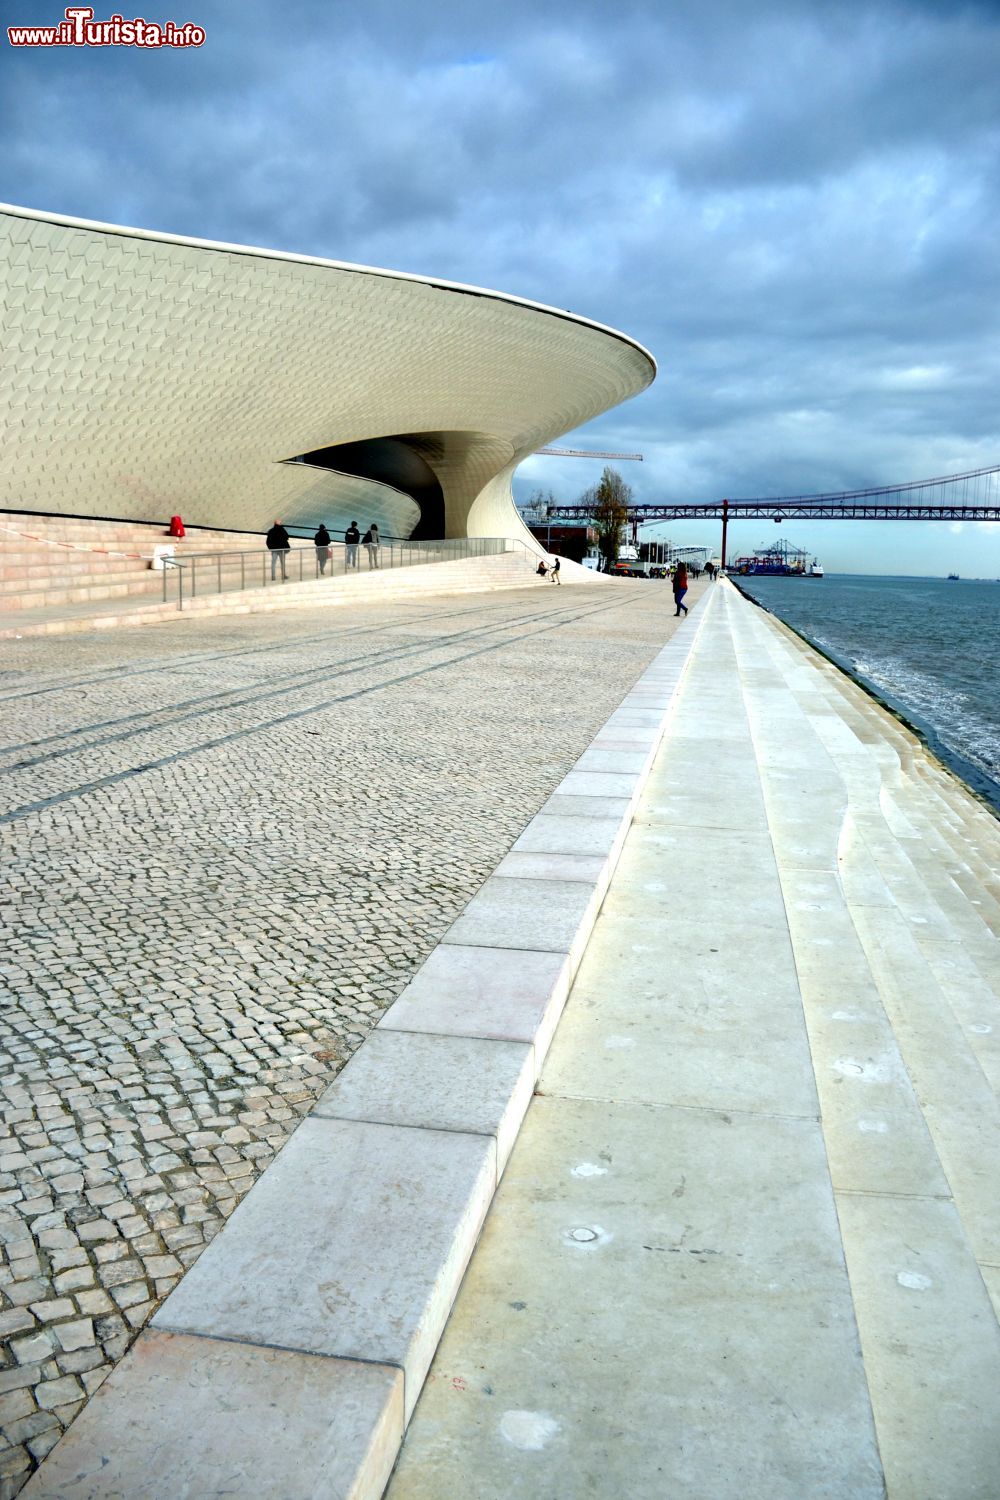 Immagine L'edificio del MAAT di Lisbona affacciato sul lungofiume del quartiere di Belém, a pochi passi dalle acque del Tejo.